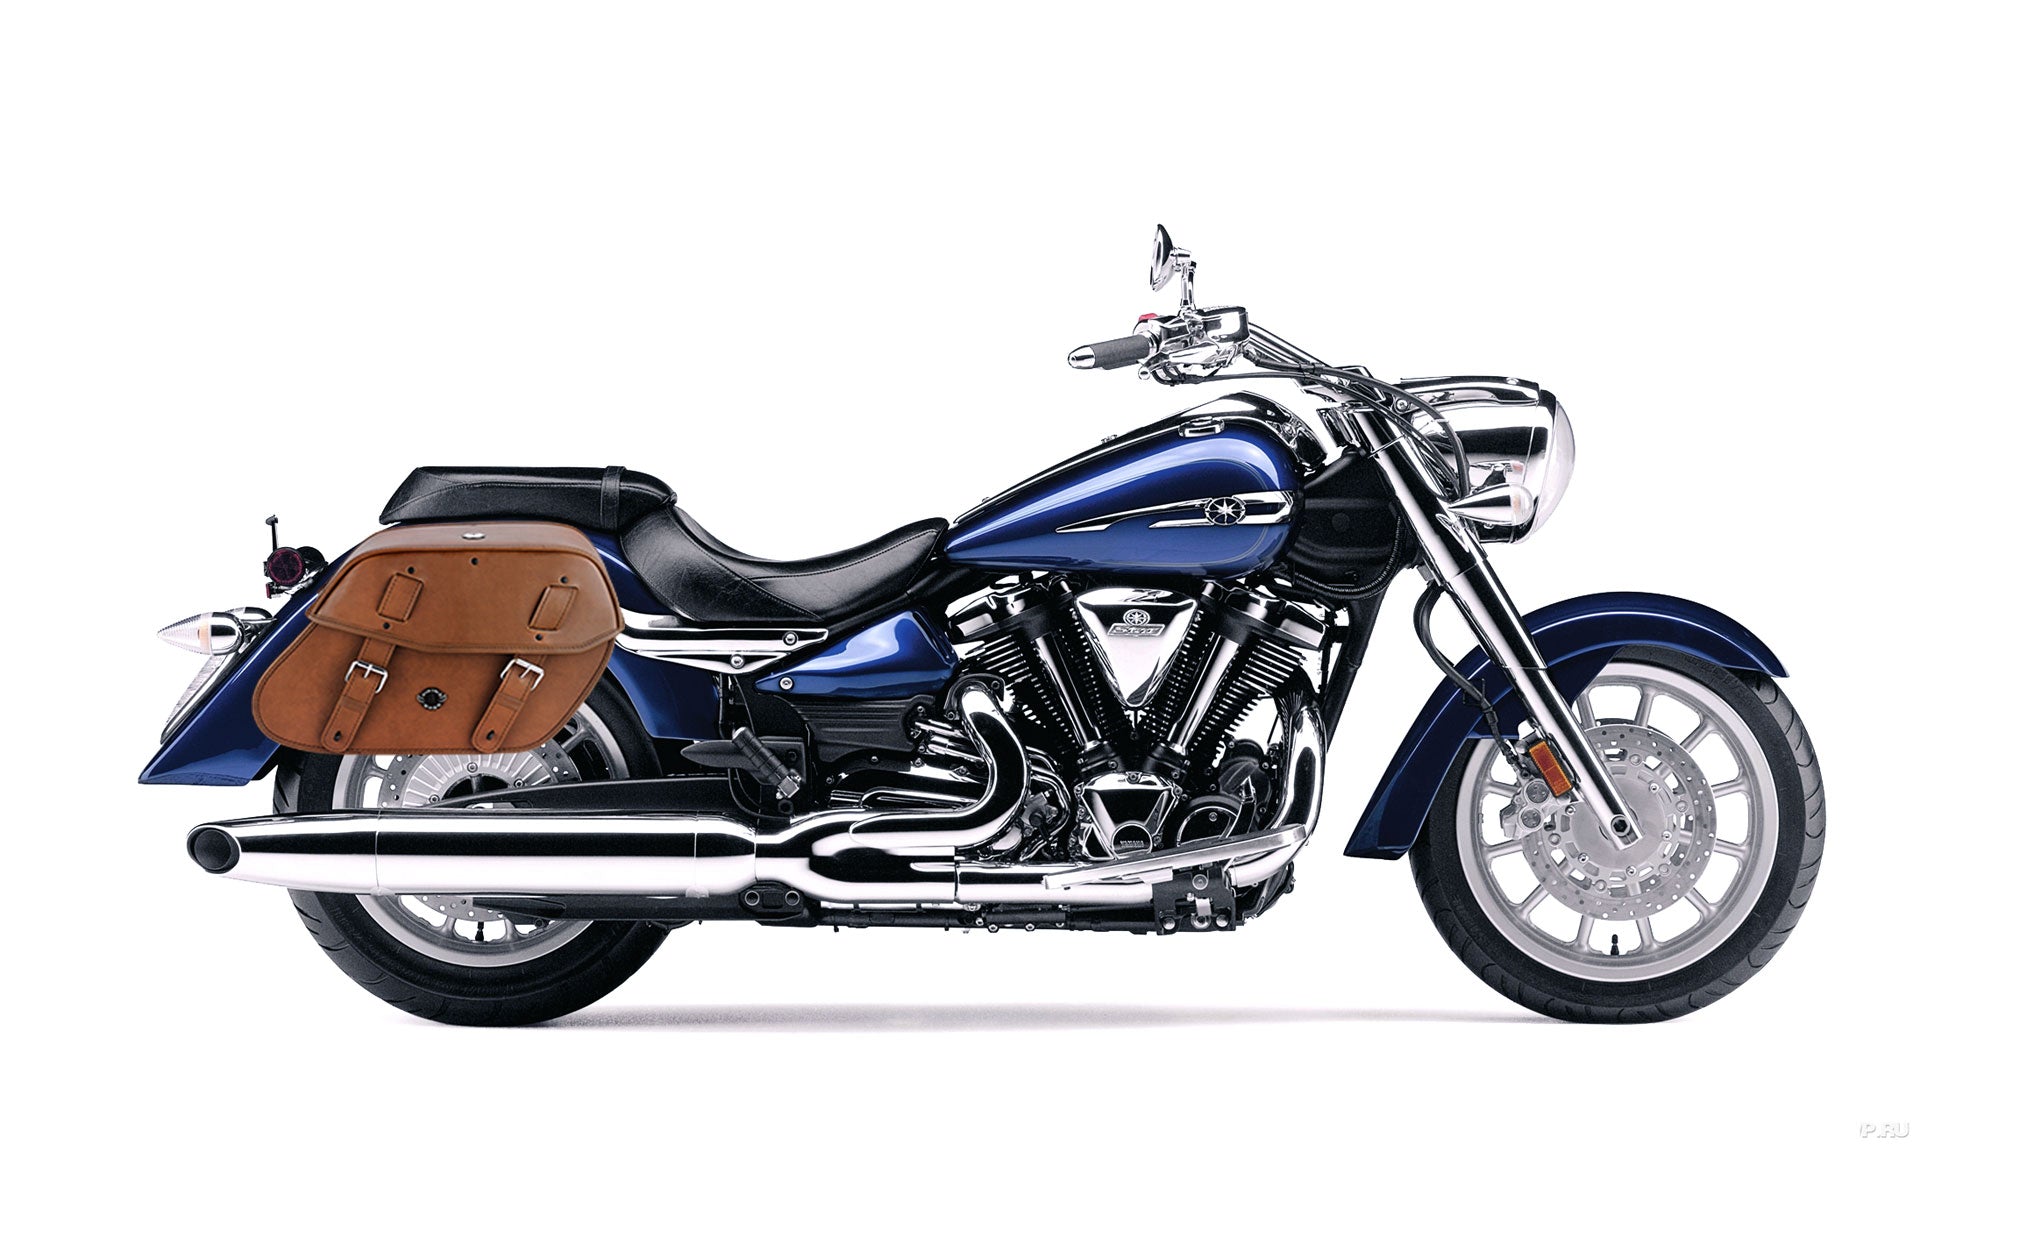 Viking Odin Brown Large Yamaha Stratoliner Xv 1900 Leather Motorcycle Saddlebags on Bike Photo @expand